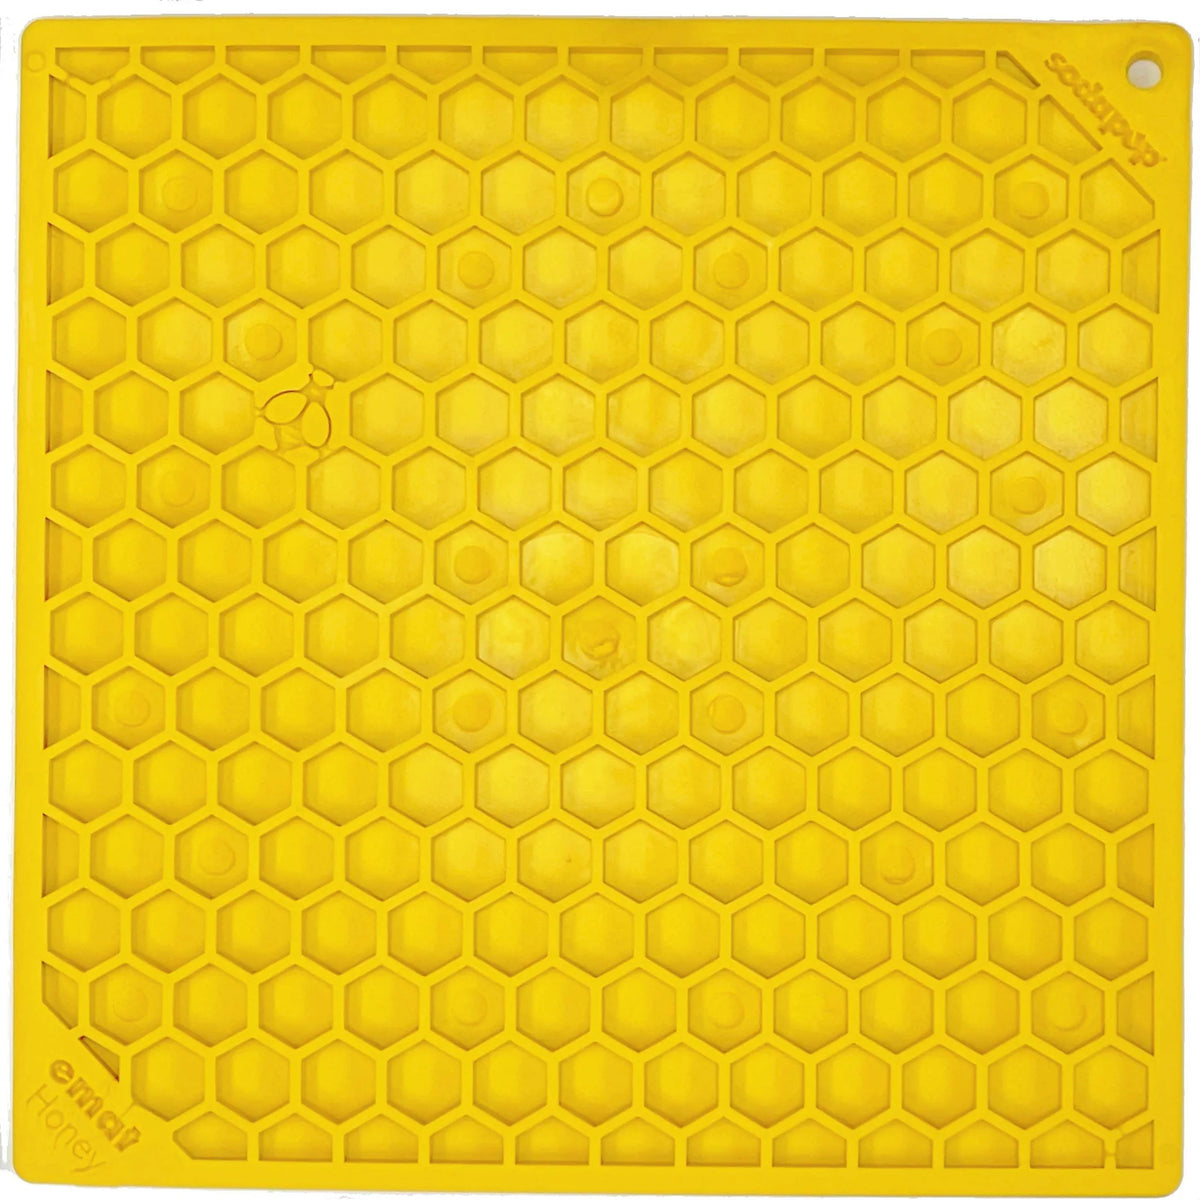 http://ruffcitypet.com/cdn/shop/products/sodapup-true-dogs-llc-lick-mat-honeycomb-e-mat-large-yellow-new-honeycomb-design-emat-enrichment-licking-mat-yellow-large-28911909077126_1024x1024_2x_f13e20a0-1cff-4f97-92b8-0b4c0547f8dc_1200x1200.webp?v=1660740958